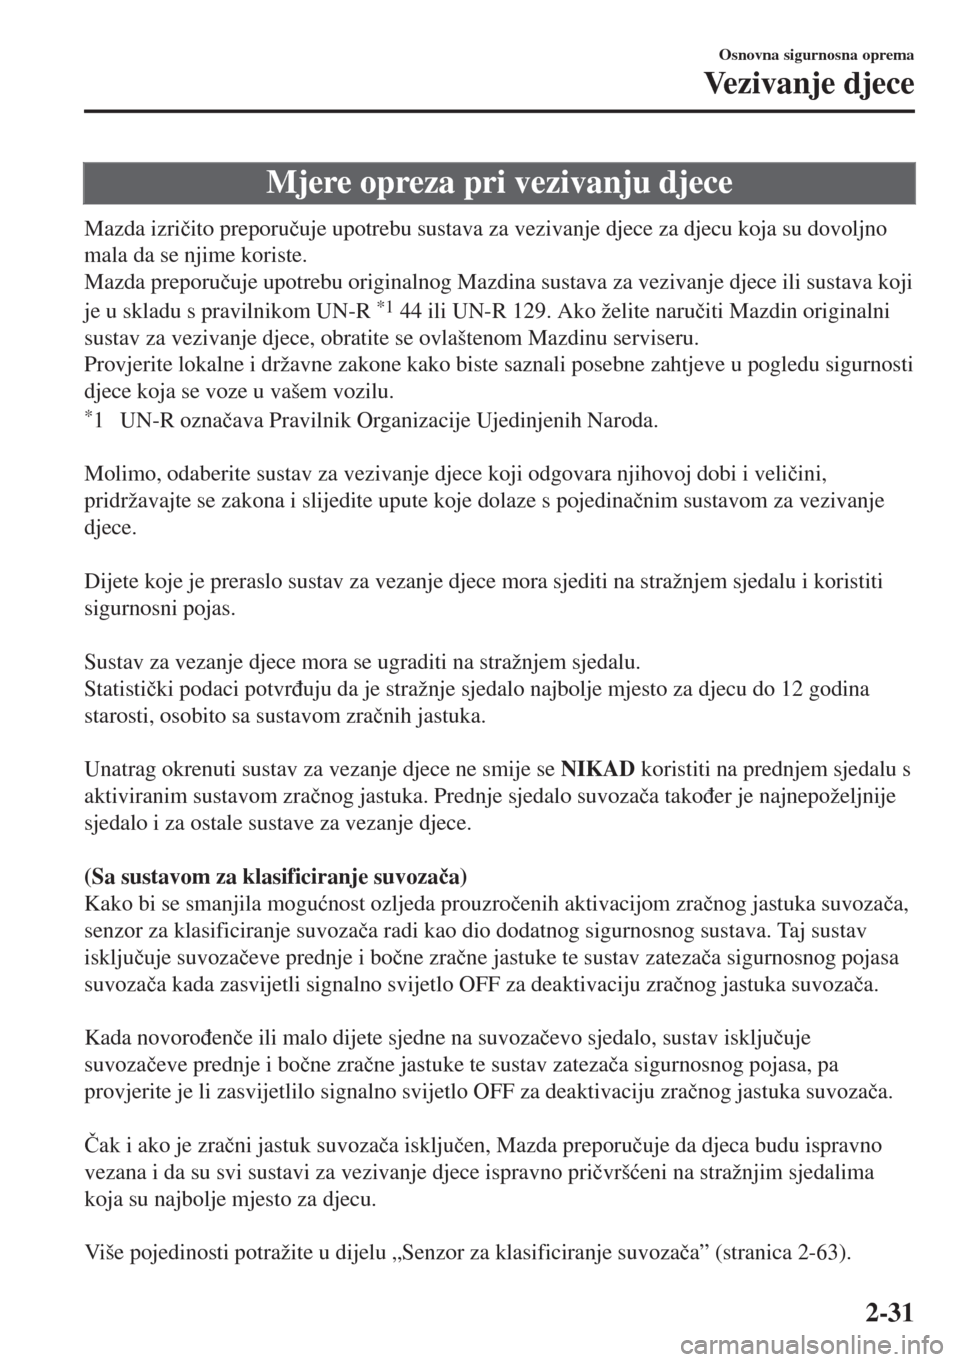 MAZDA MODEL 6 2018  Upute za uporabu (in Croatian) Mjere opreza pri vezivanju djece
Mazda izri�þito preporu�þuje upotrebu sustava za vezivanje djece za djecu koja su dovoljno
mala da se njime koriste.
Mazda preporu�þuje upotrebu originalnog Mazdina